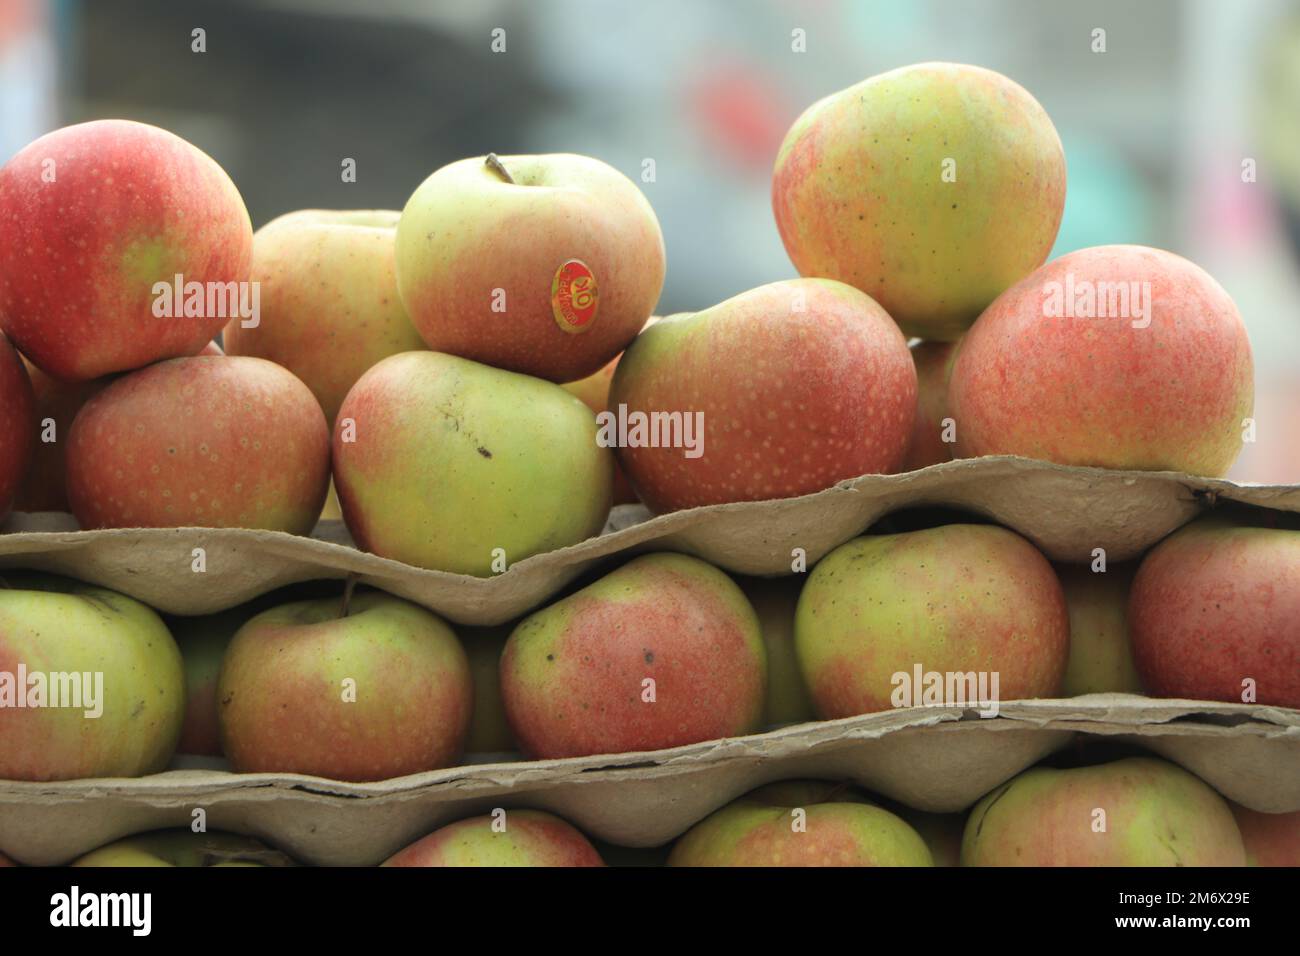 https://c8.alamy.com/comp/2M6X29E/background-with-fresh-red-apples-2M6X29E.jpg